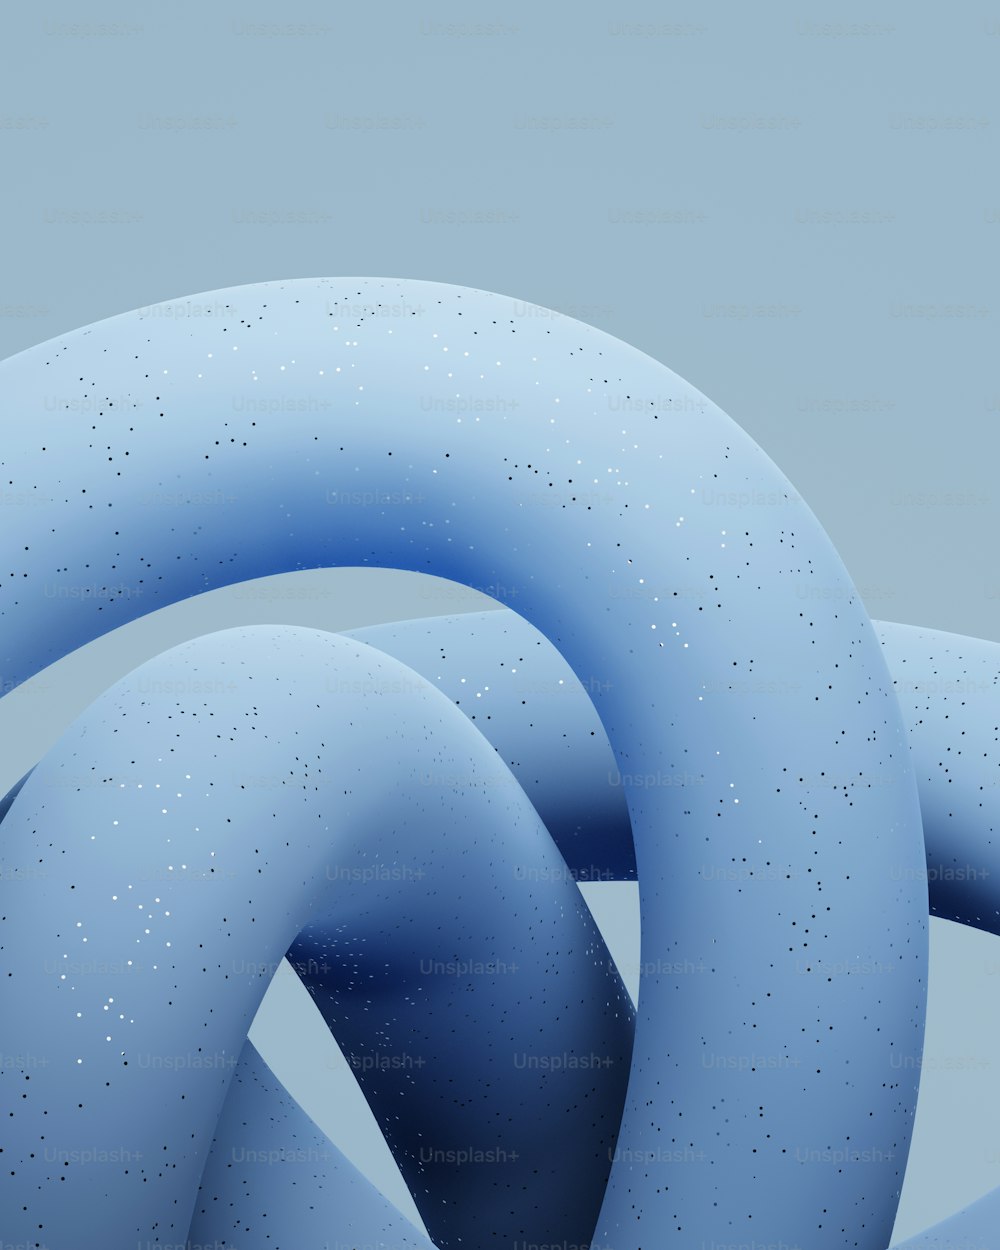 Un objeto azul grande con muchas burbujas